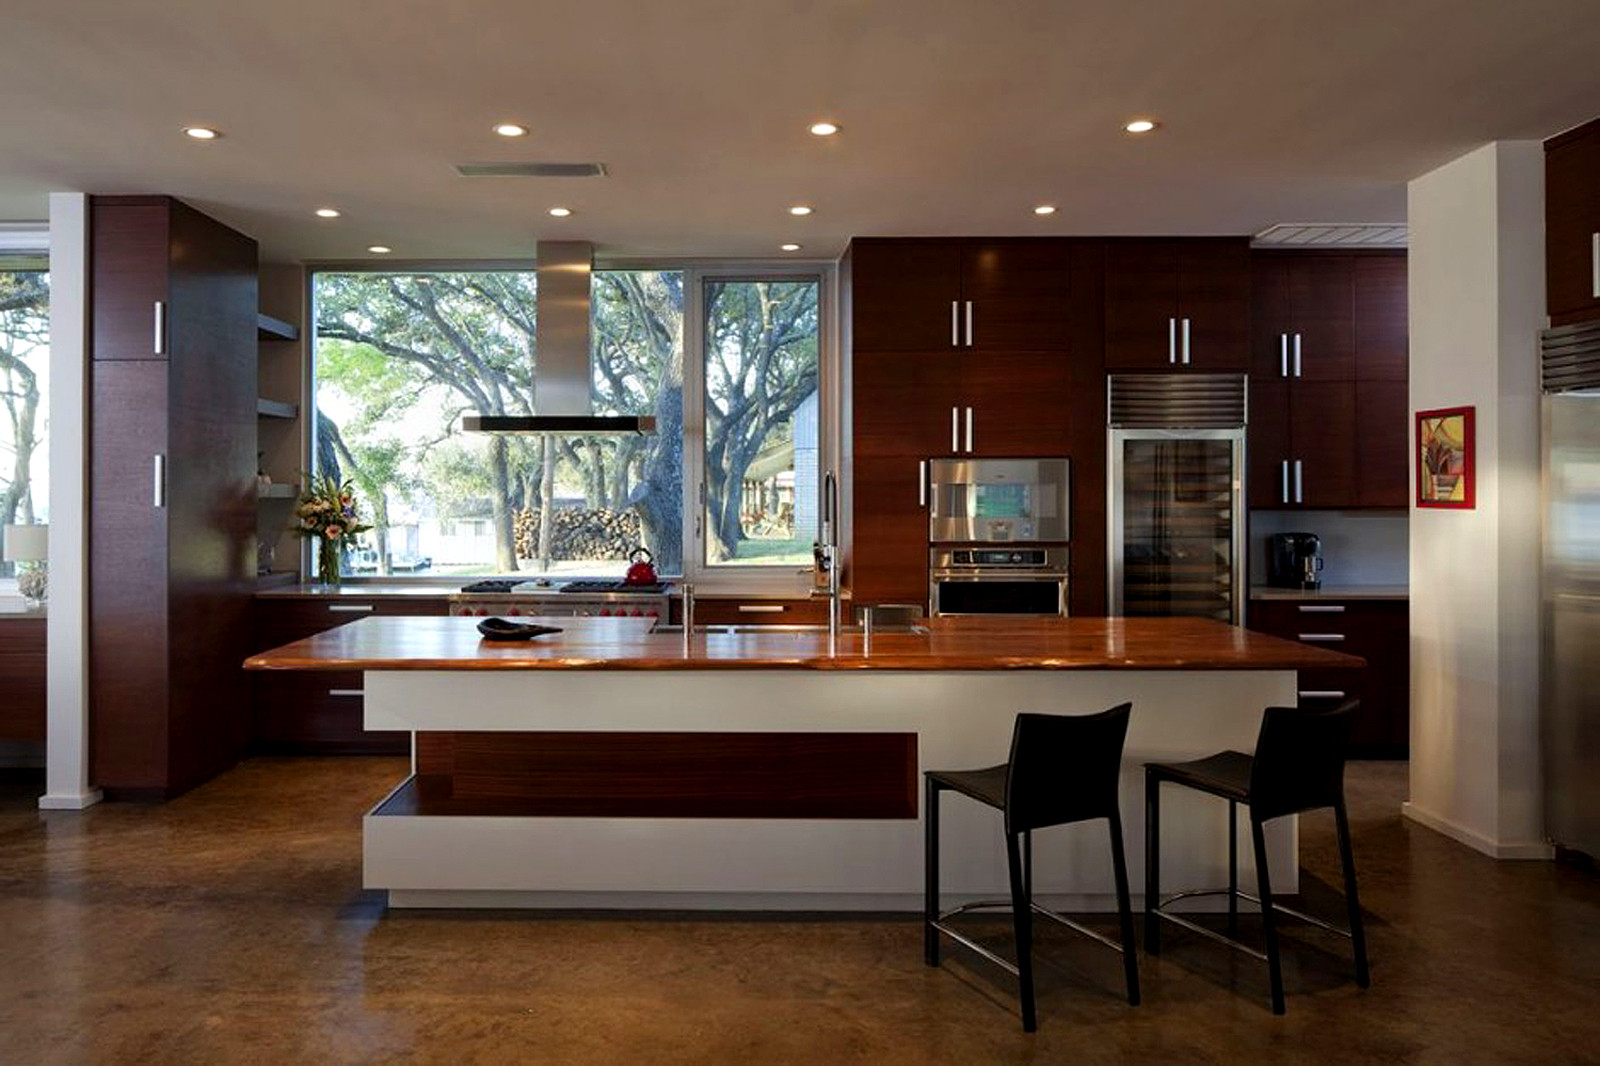 Modern Kitchen Decor Ideas
 30 Modern Kitchen Design Ideas – The WoW Style